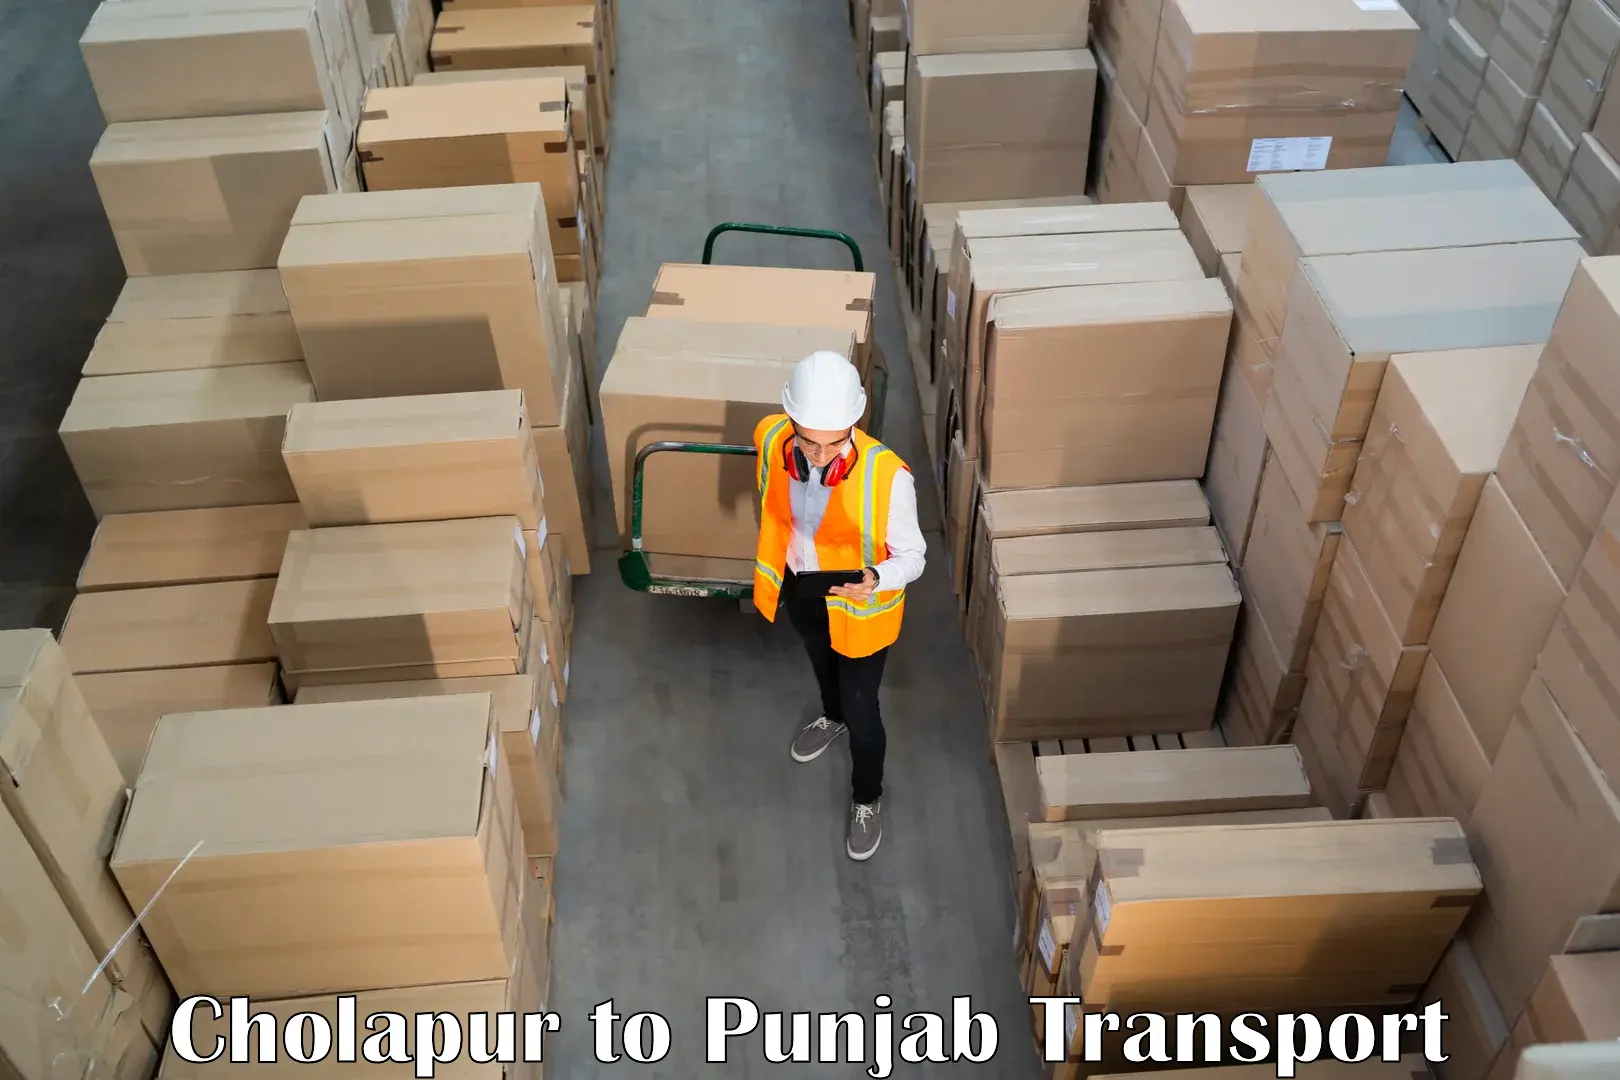 Nationwide transport services Cholapur to Bathinda